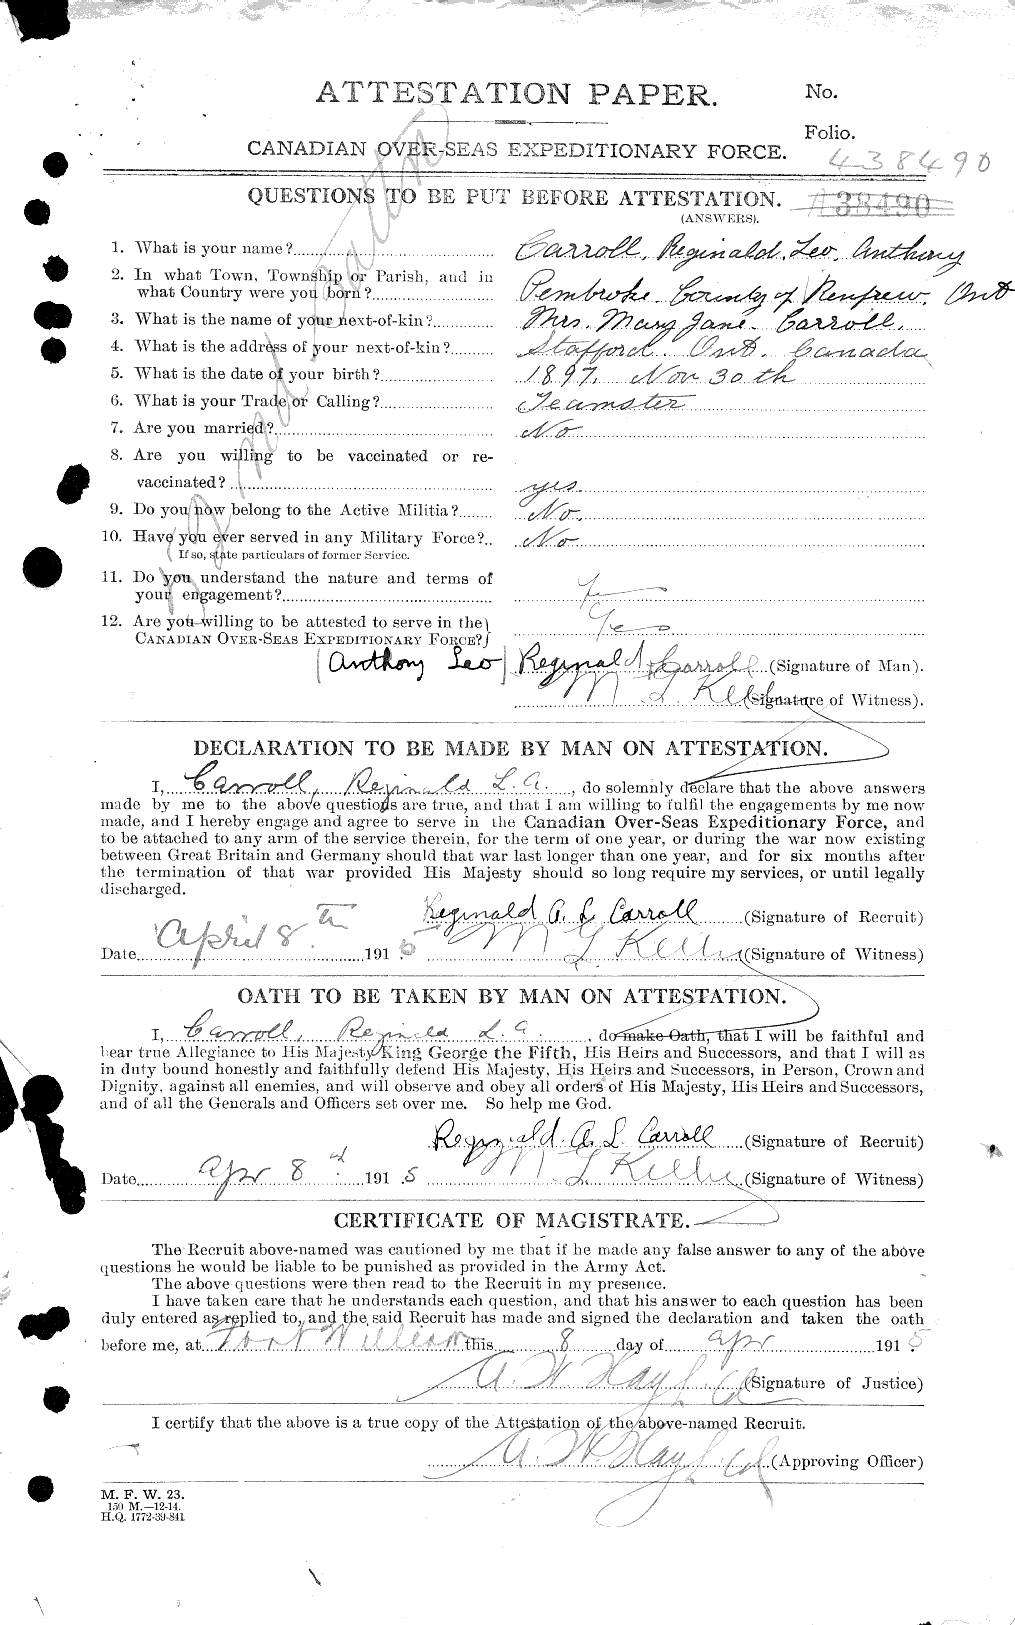 Dossiers du Personnel de la Première Guerre mondiale - CEC 005697a